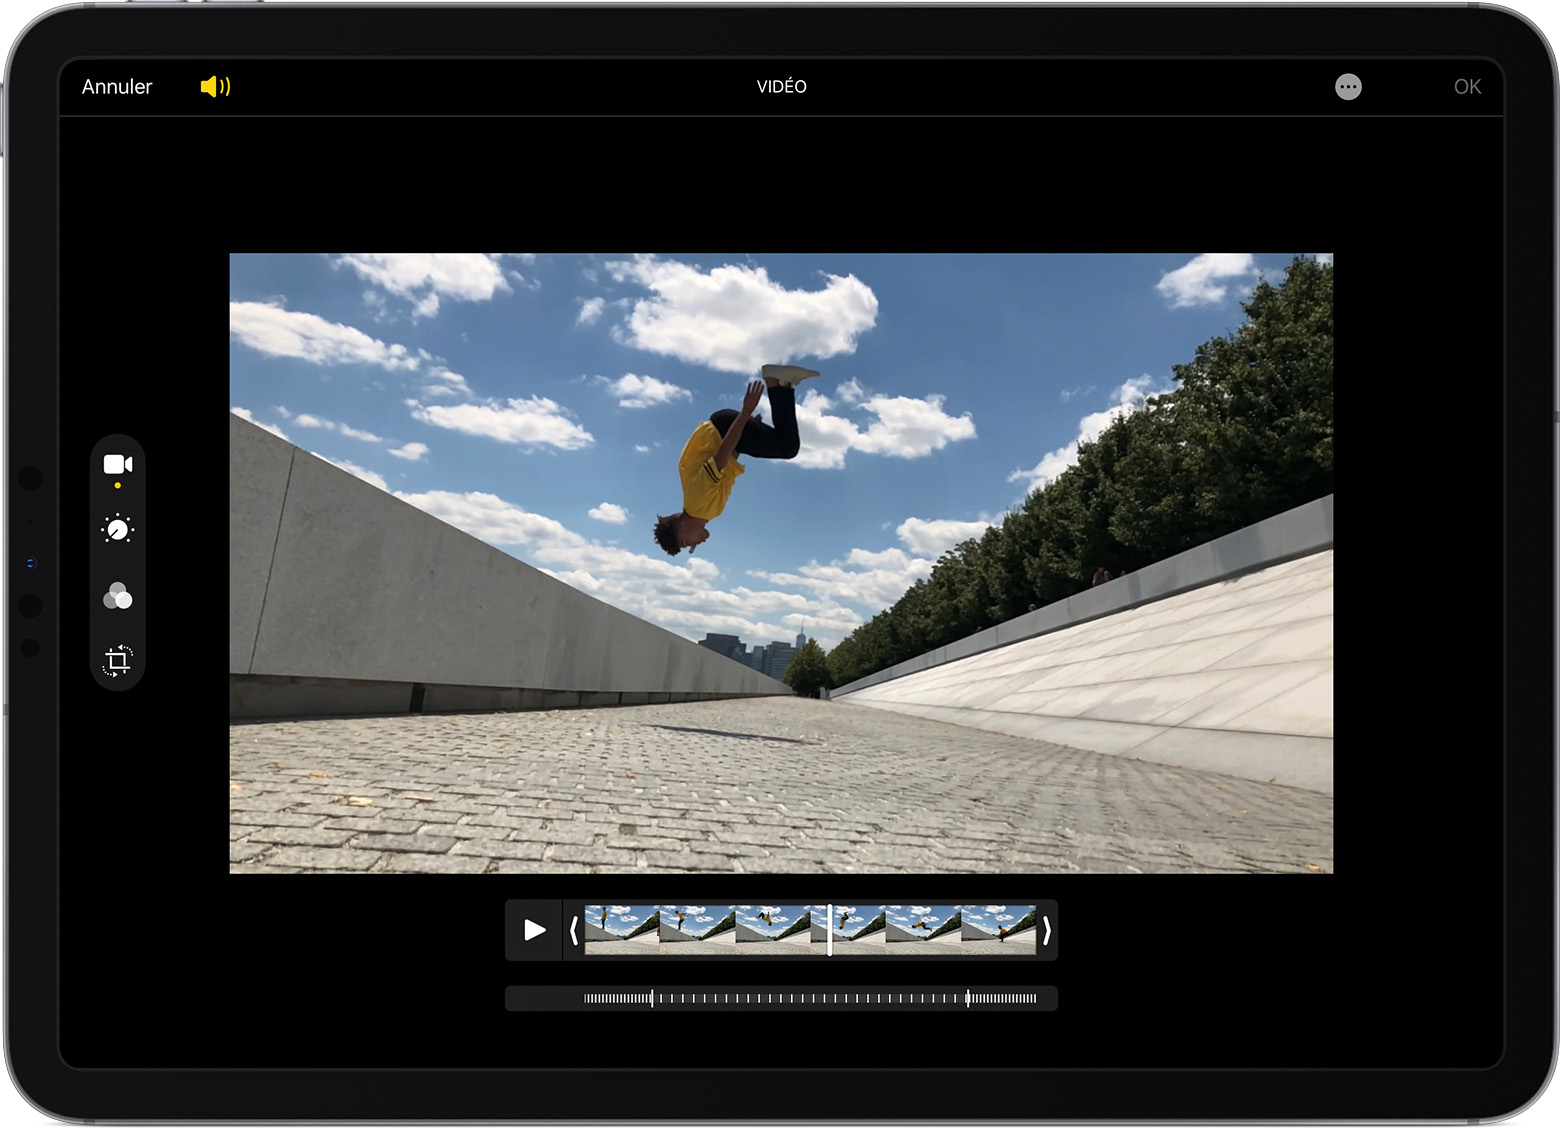 جهاز iPad يعرض إعدادات الحركة البطيئة لمقطع فيديو يتم تعديله